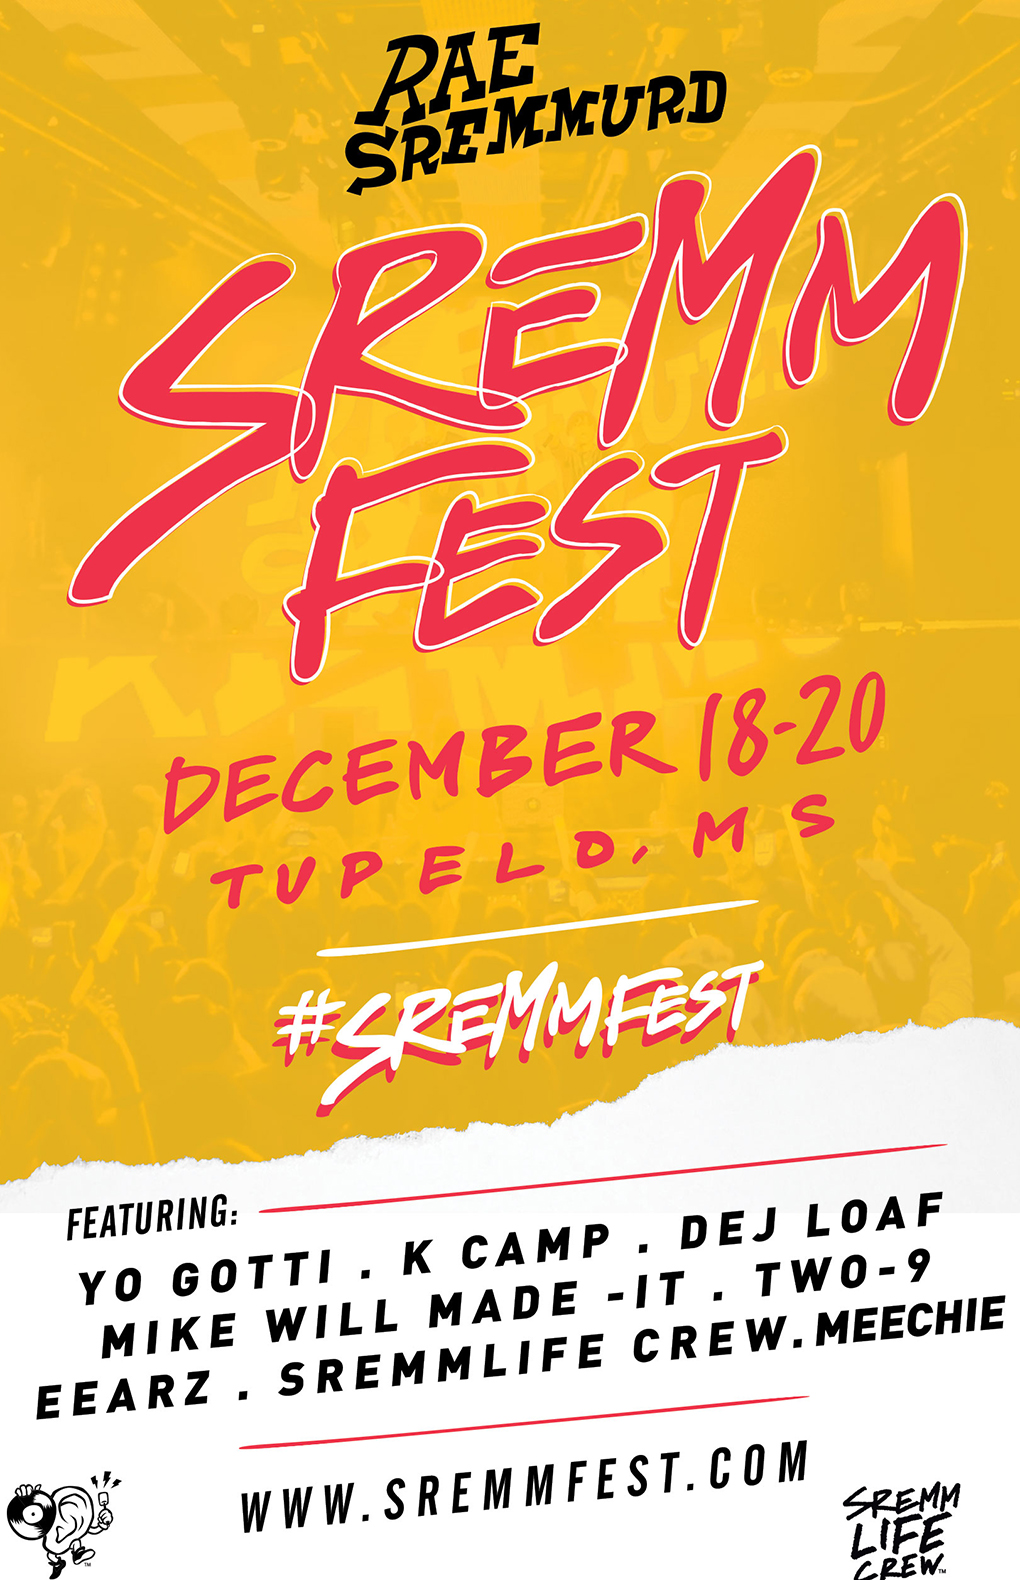 sremmfest-flyer-updated-2015-billboard-embed